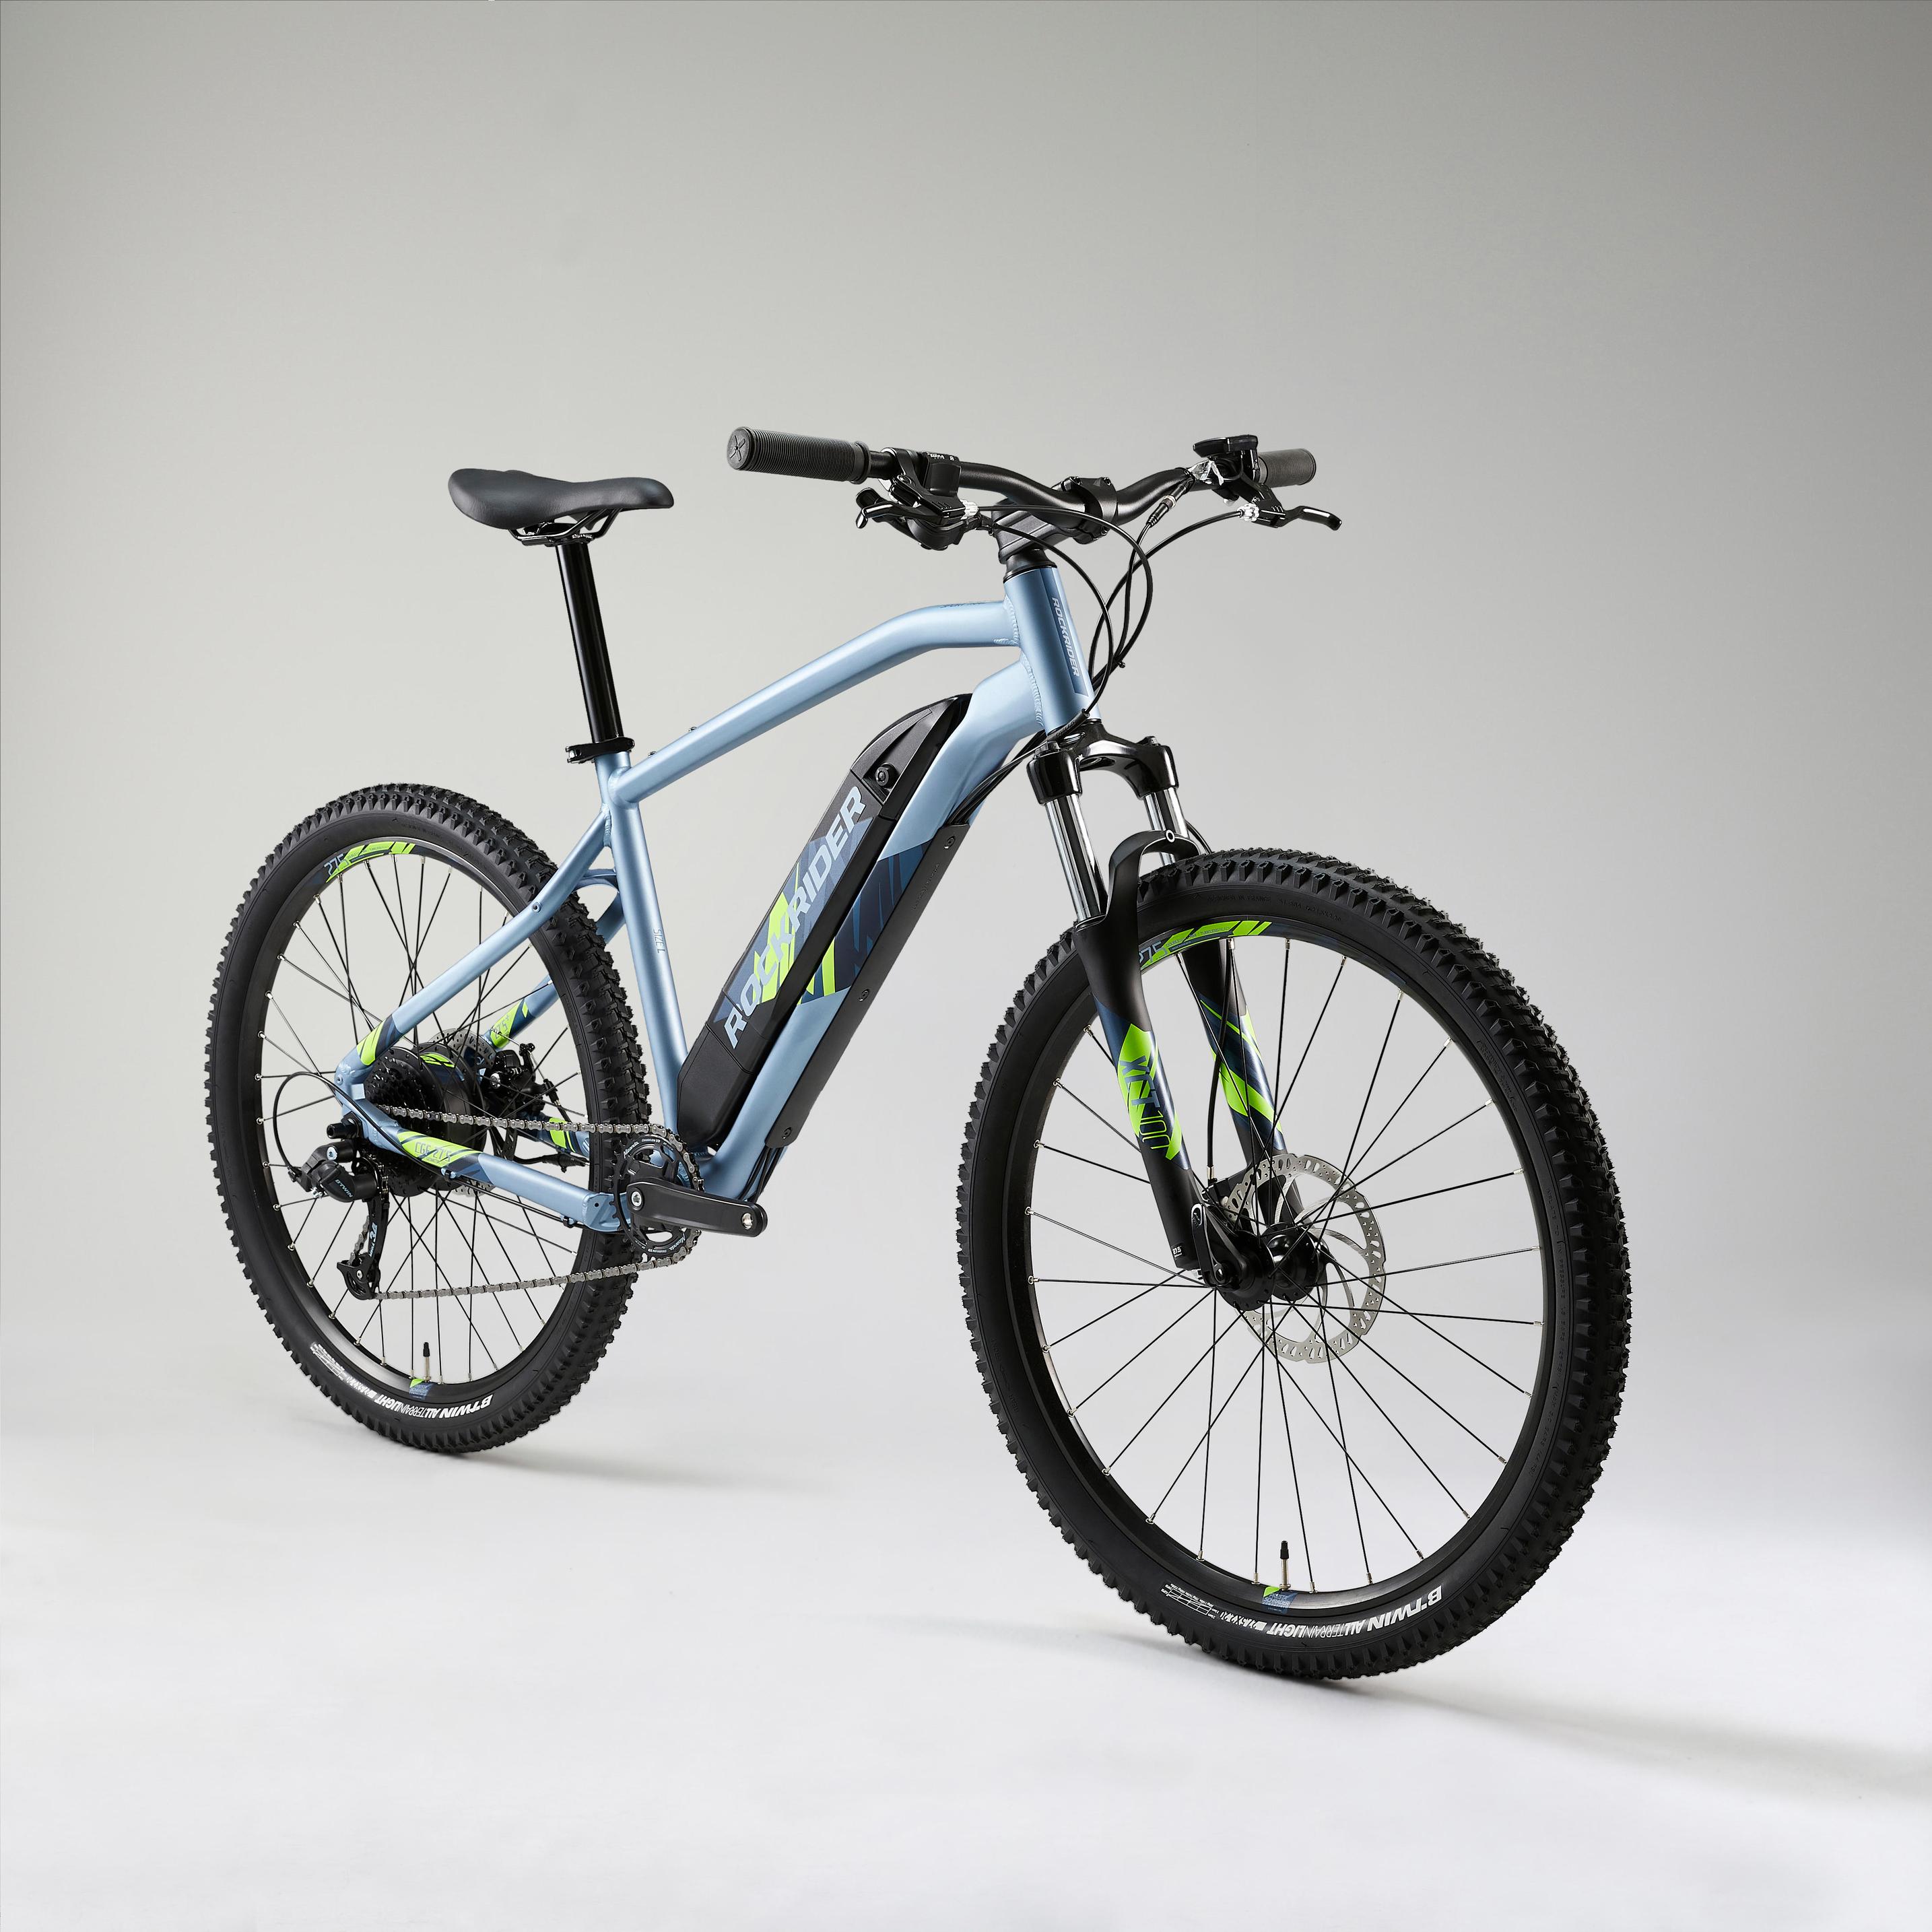 Oferta de Bicicleta eléctrica mtb E-ST100 rin 27,5 Rockrider azul claro por $3570000 en Decathlon